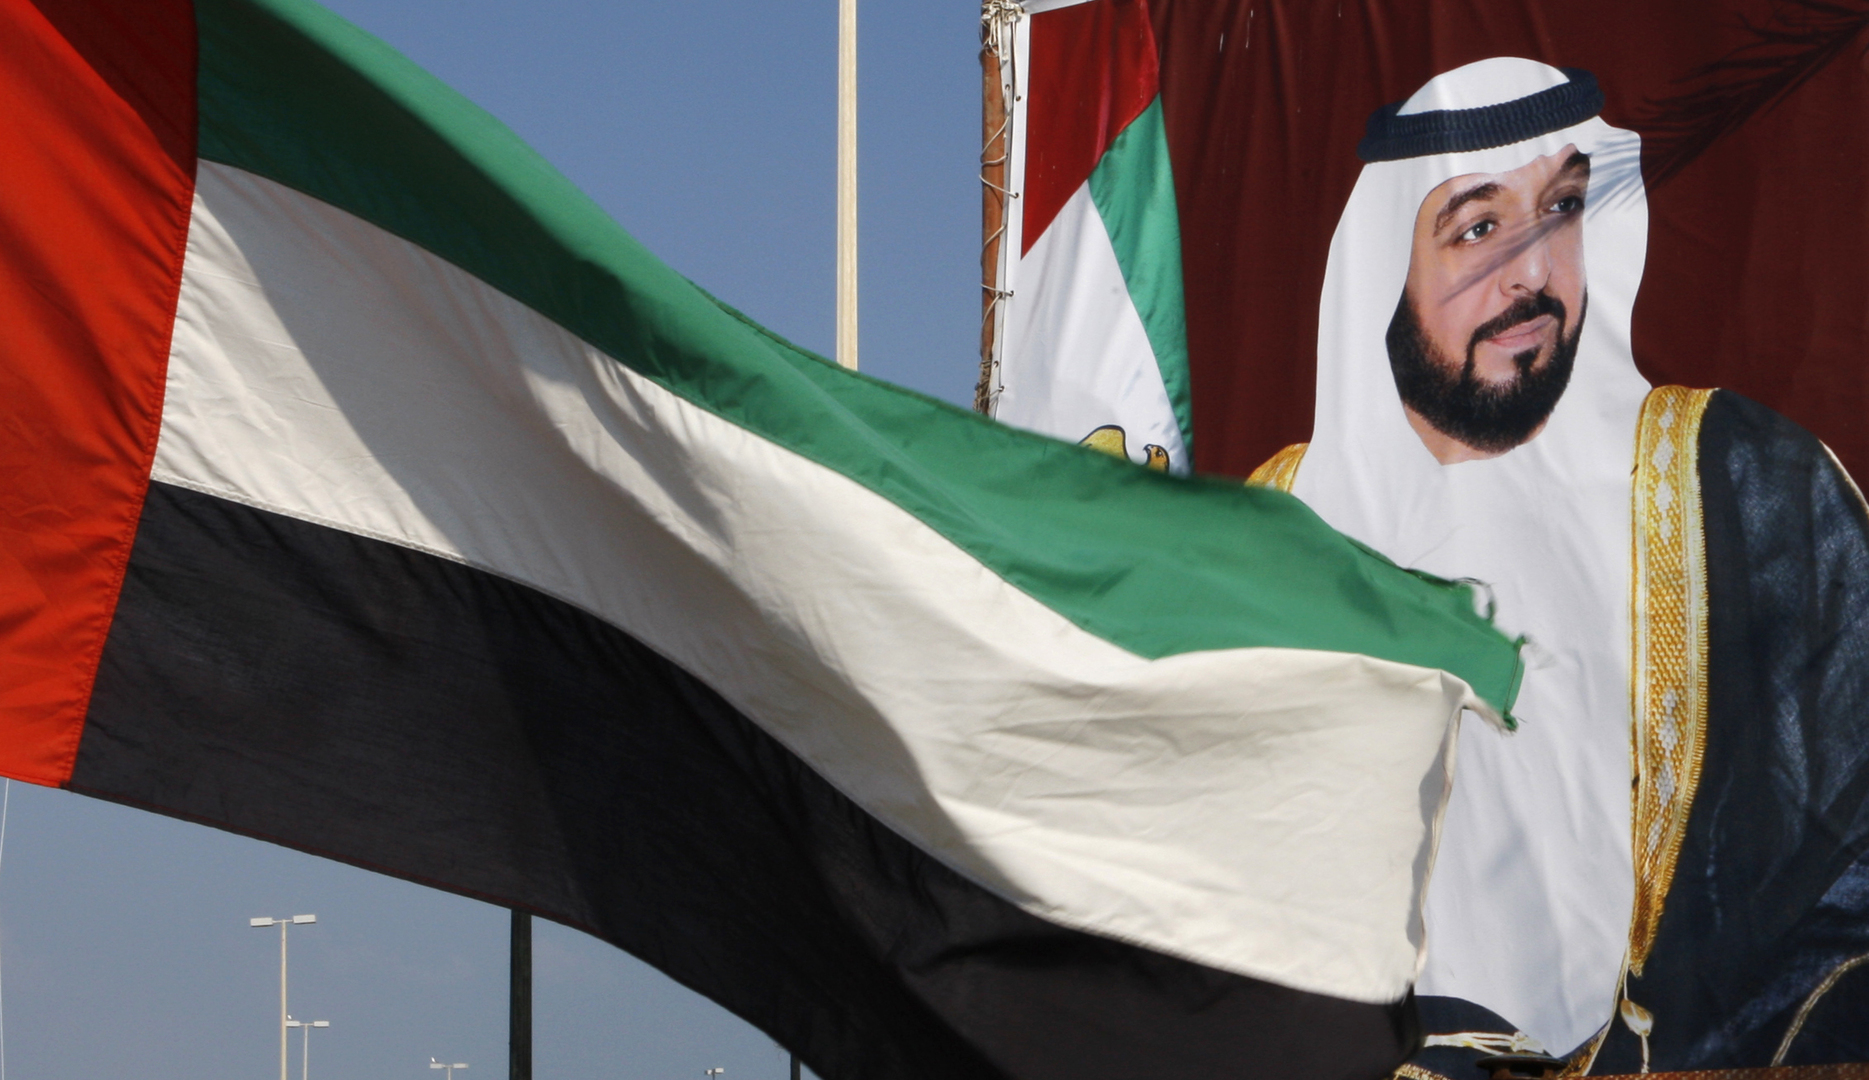 الإمارات: الشيخ شخبوط بن نهيان وزير دولة للشؤون الخارجية مكان أنور قرقاش الذي أصبح مستشارا للرئيس